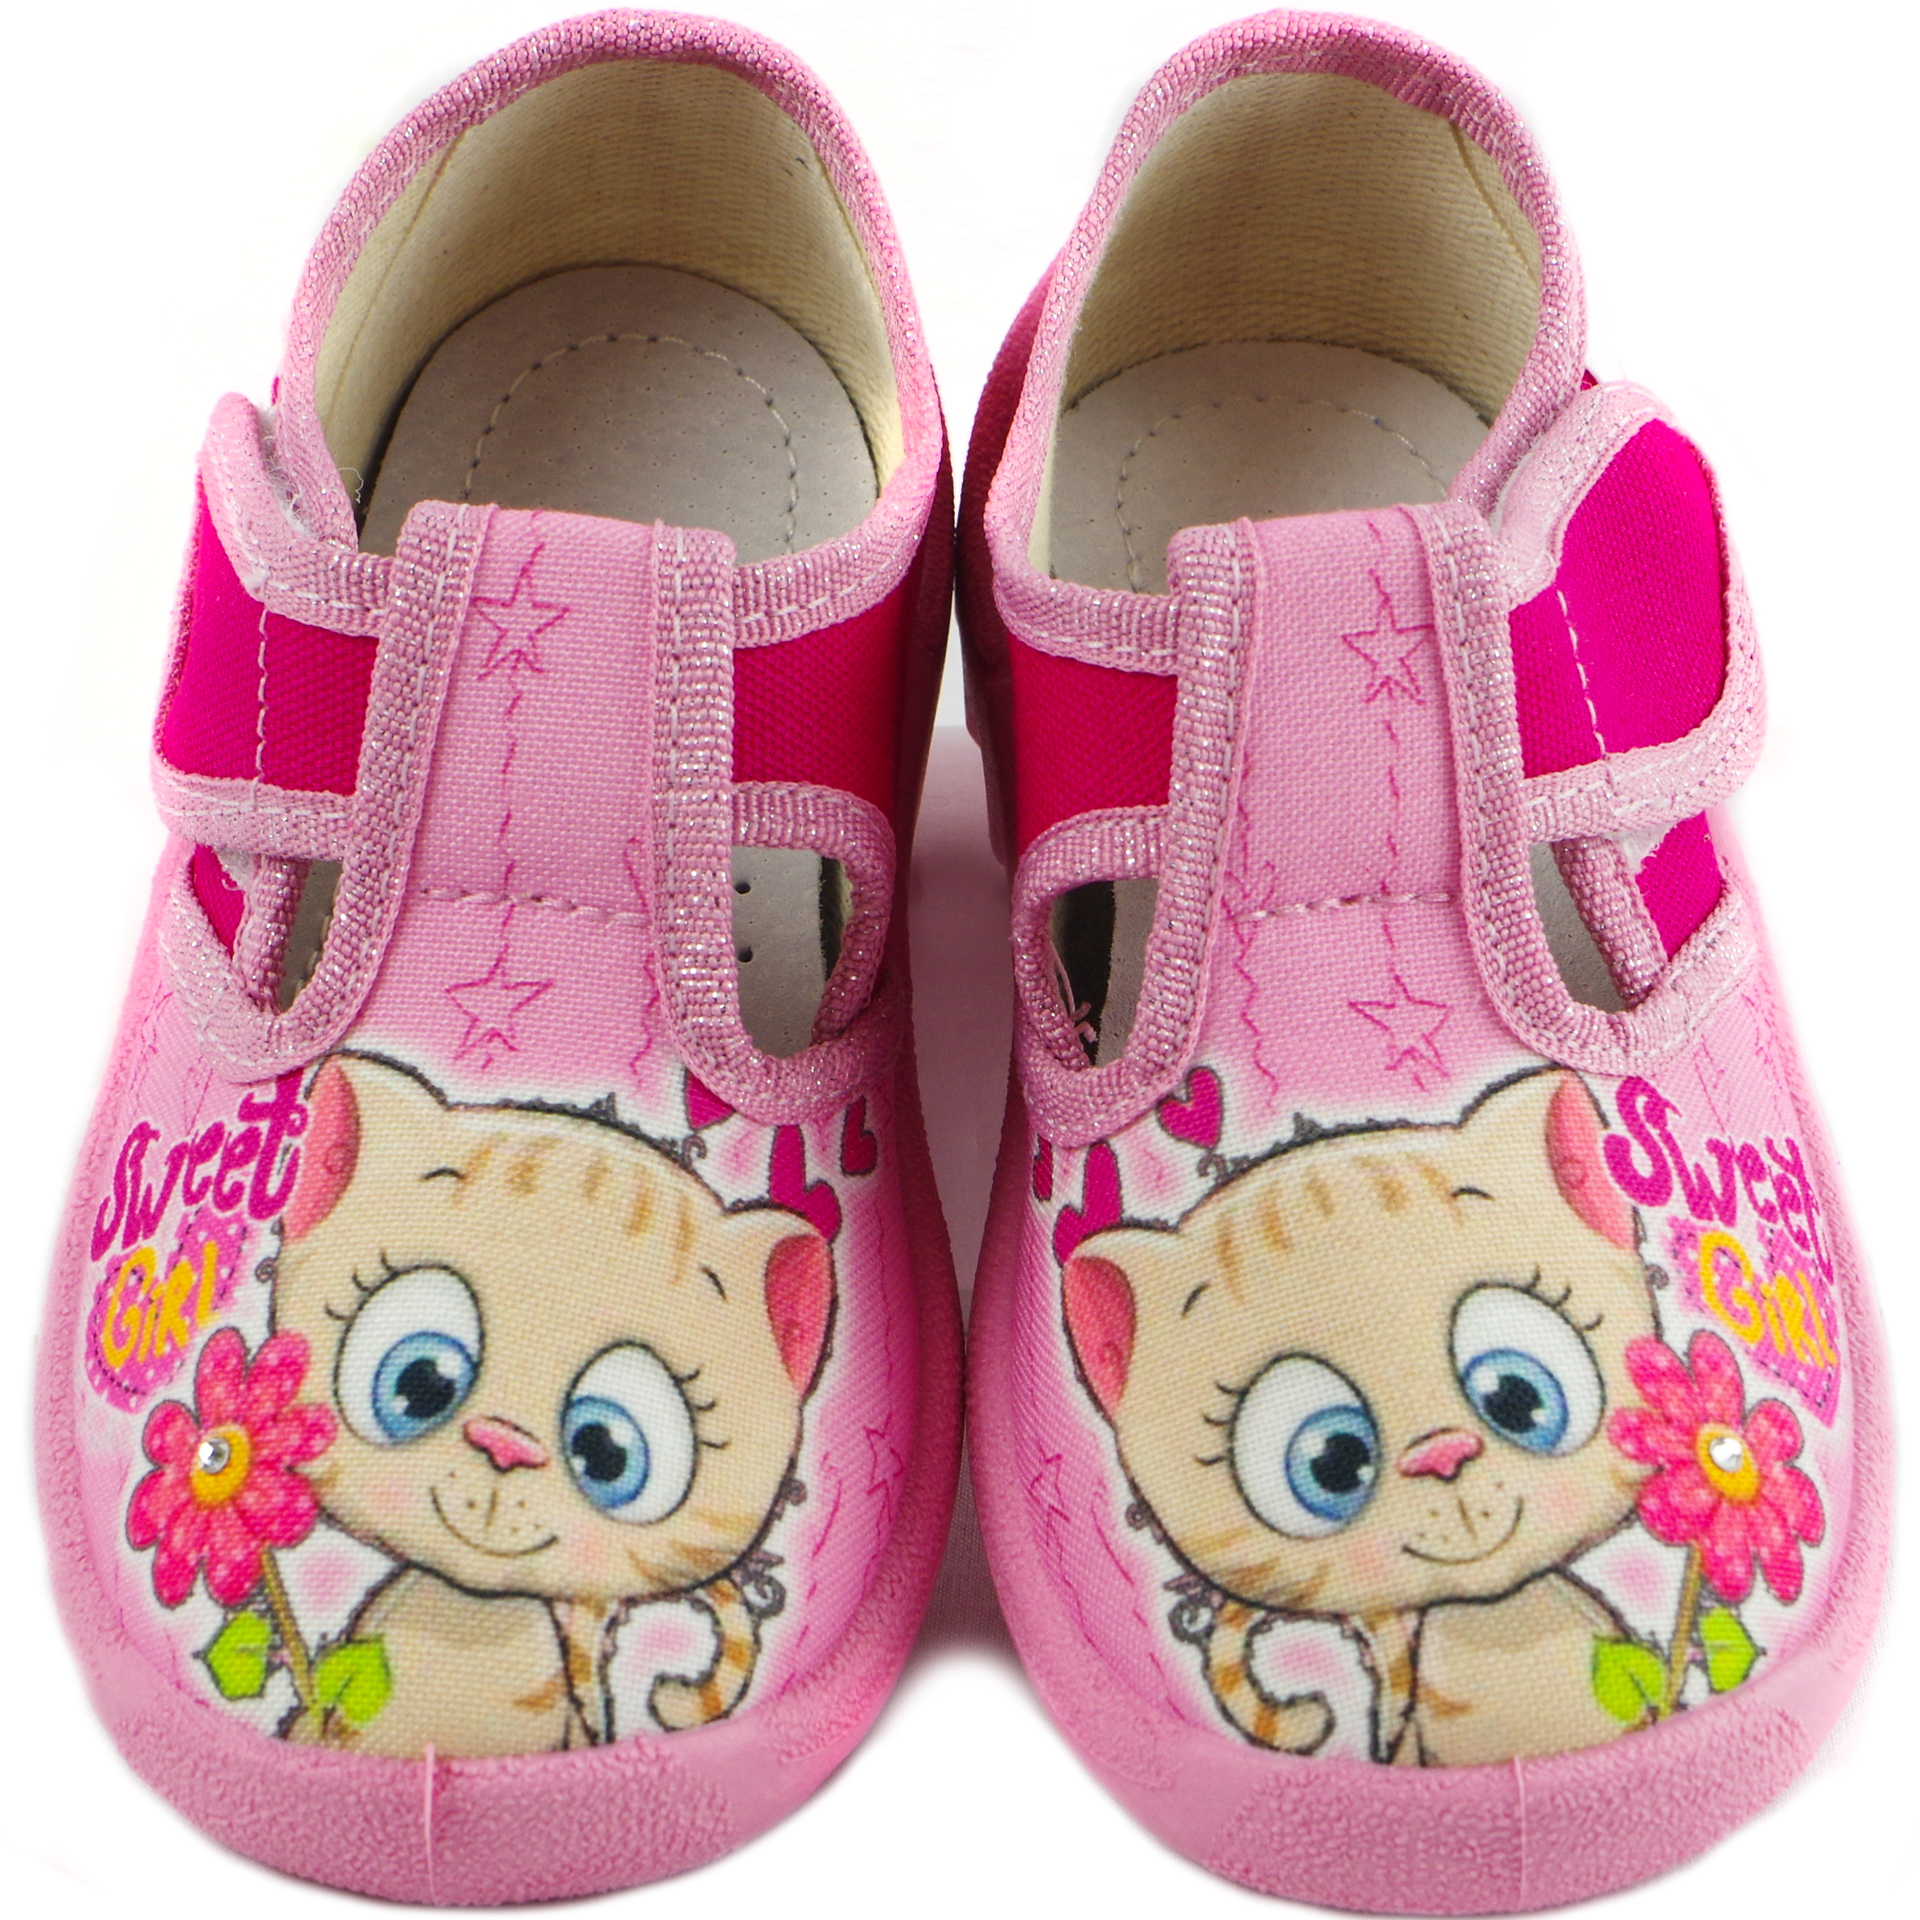 Текстильная обувь для девочек Тапочки Даша (1911) цвет Розовый 21-27 размеры – Sole Kids. Фото 4